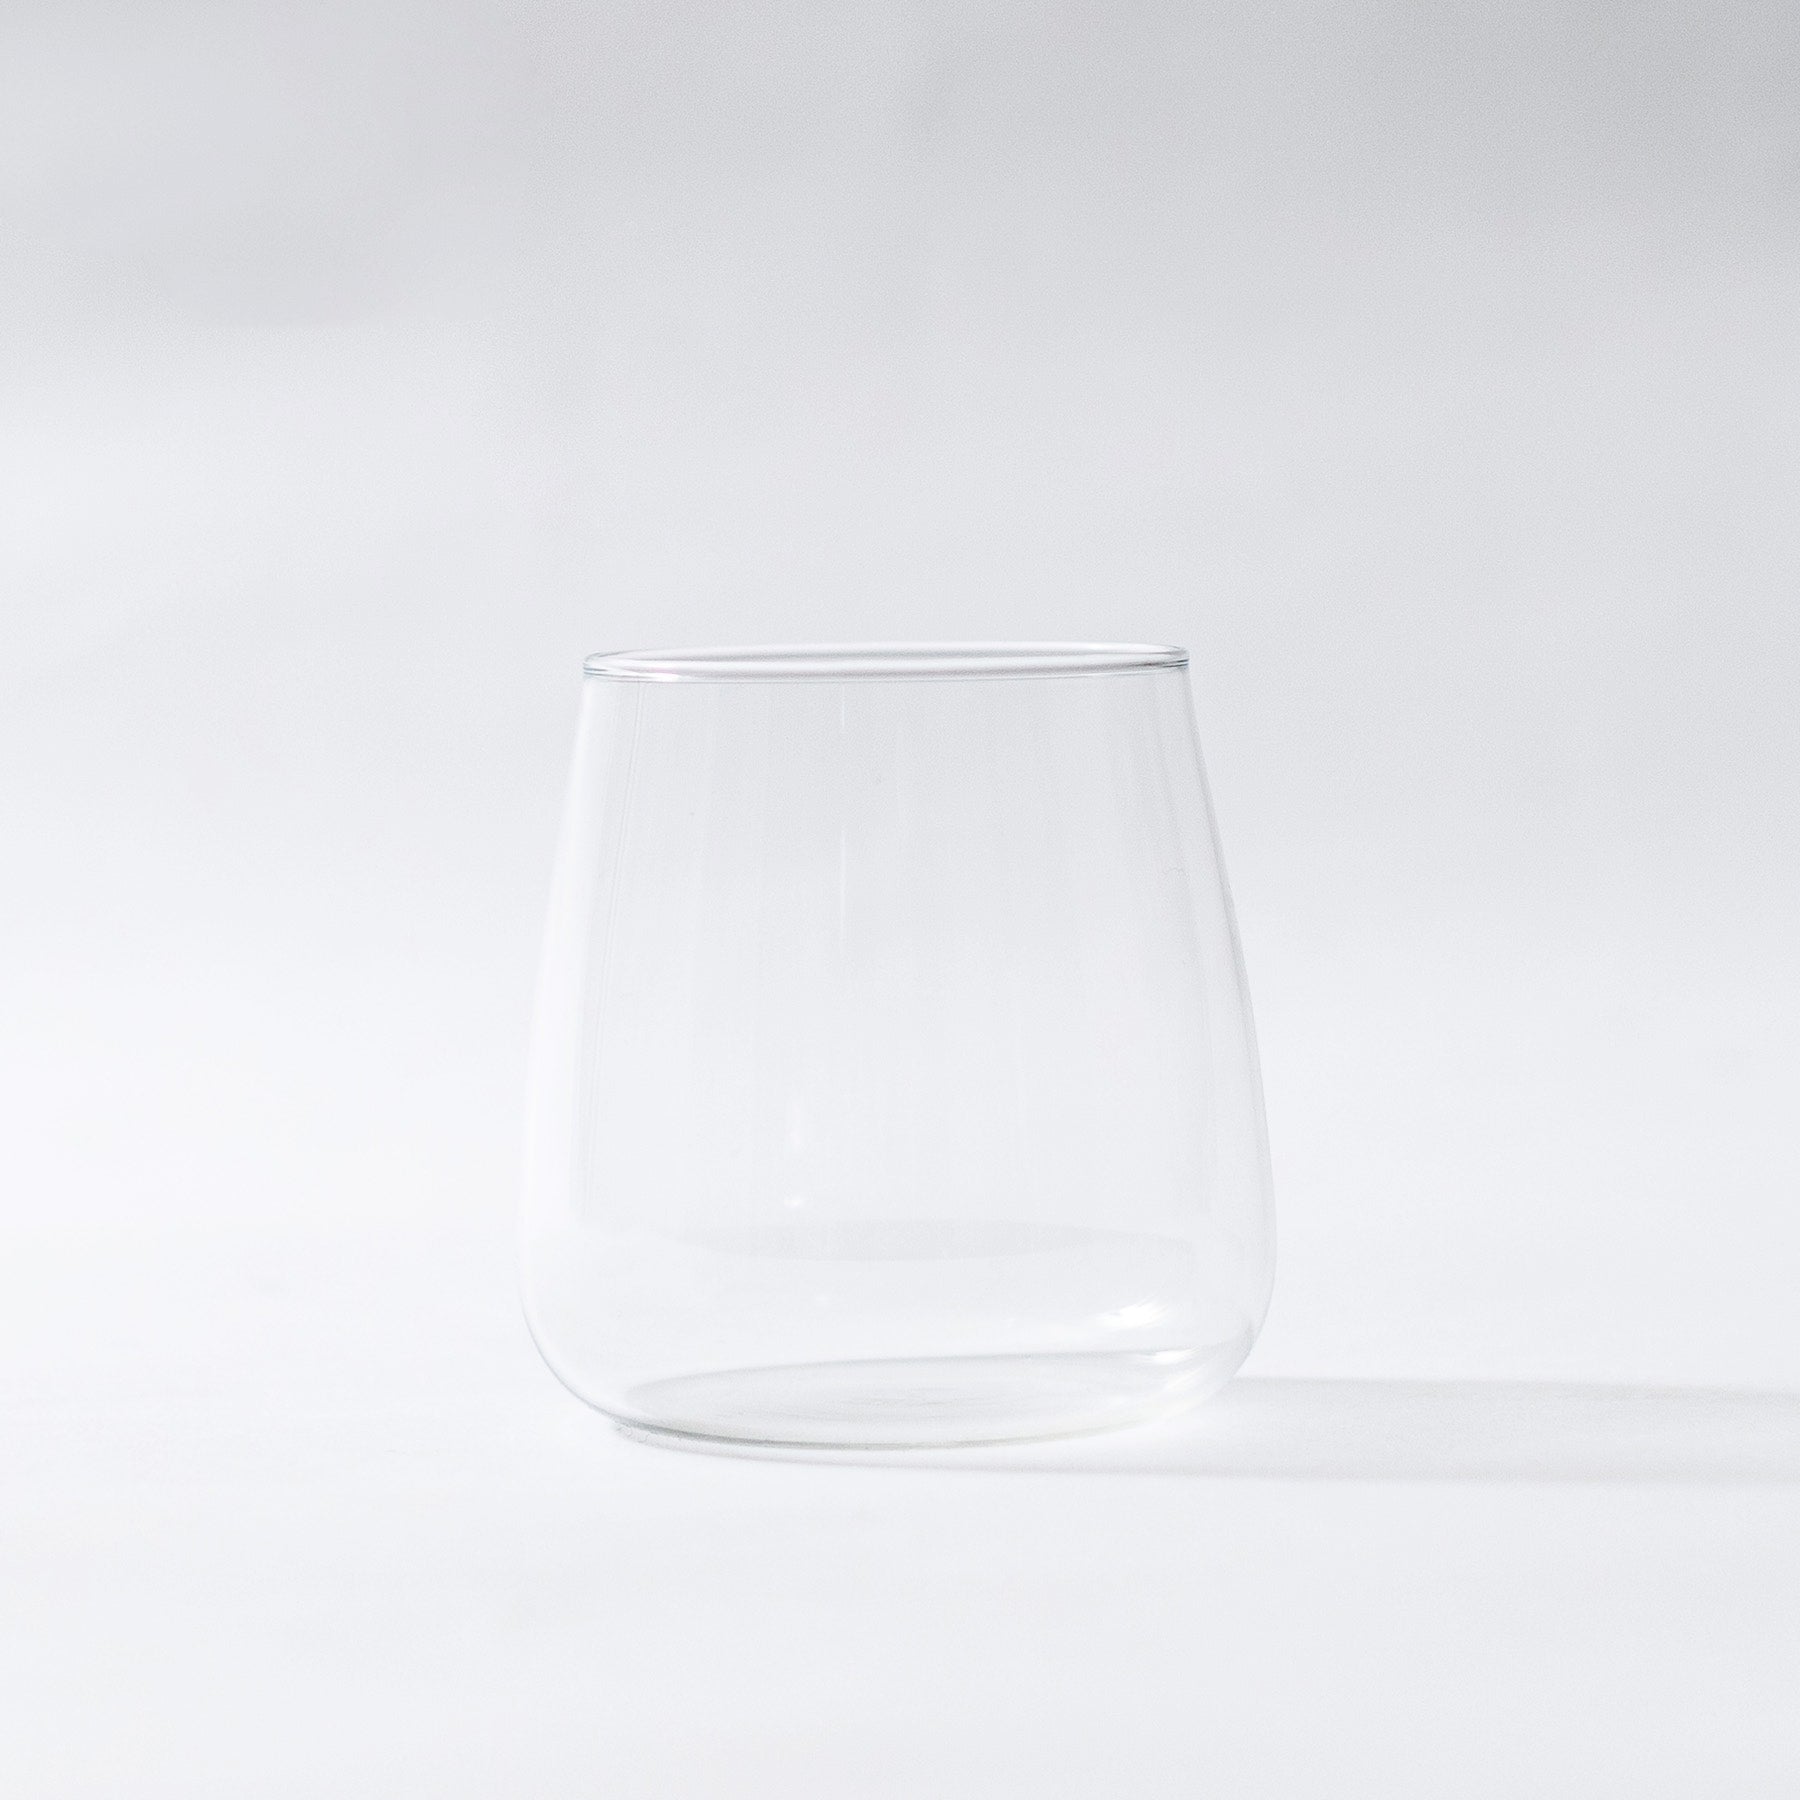 hya0003 - White Wine Glass 360ml